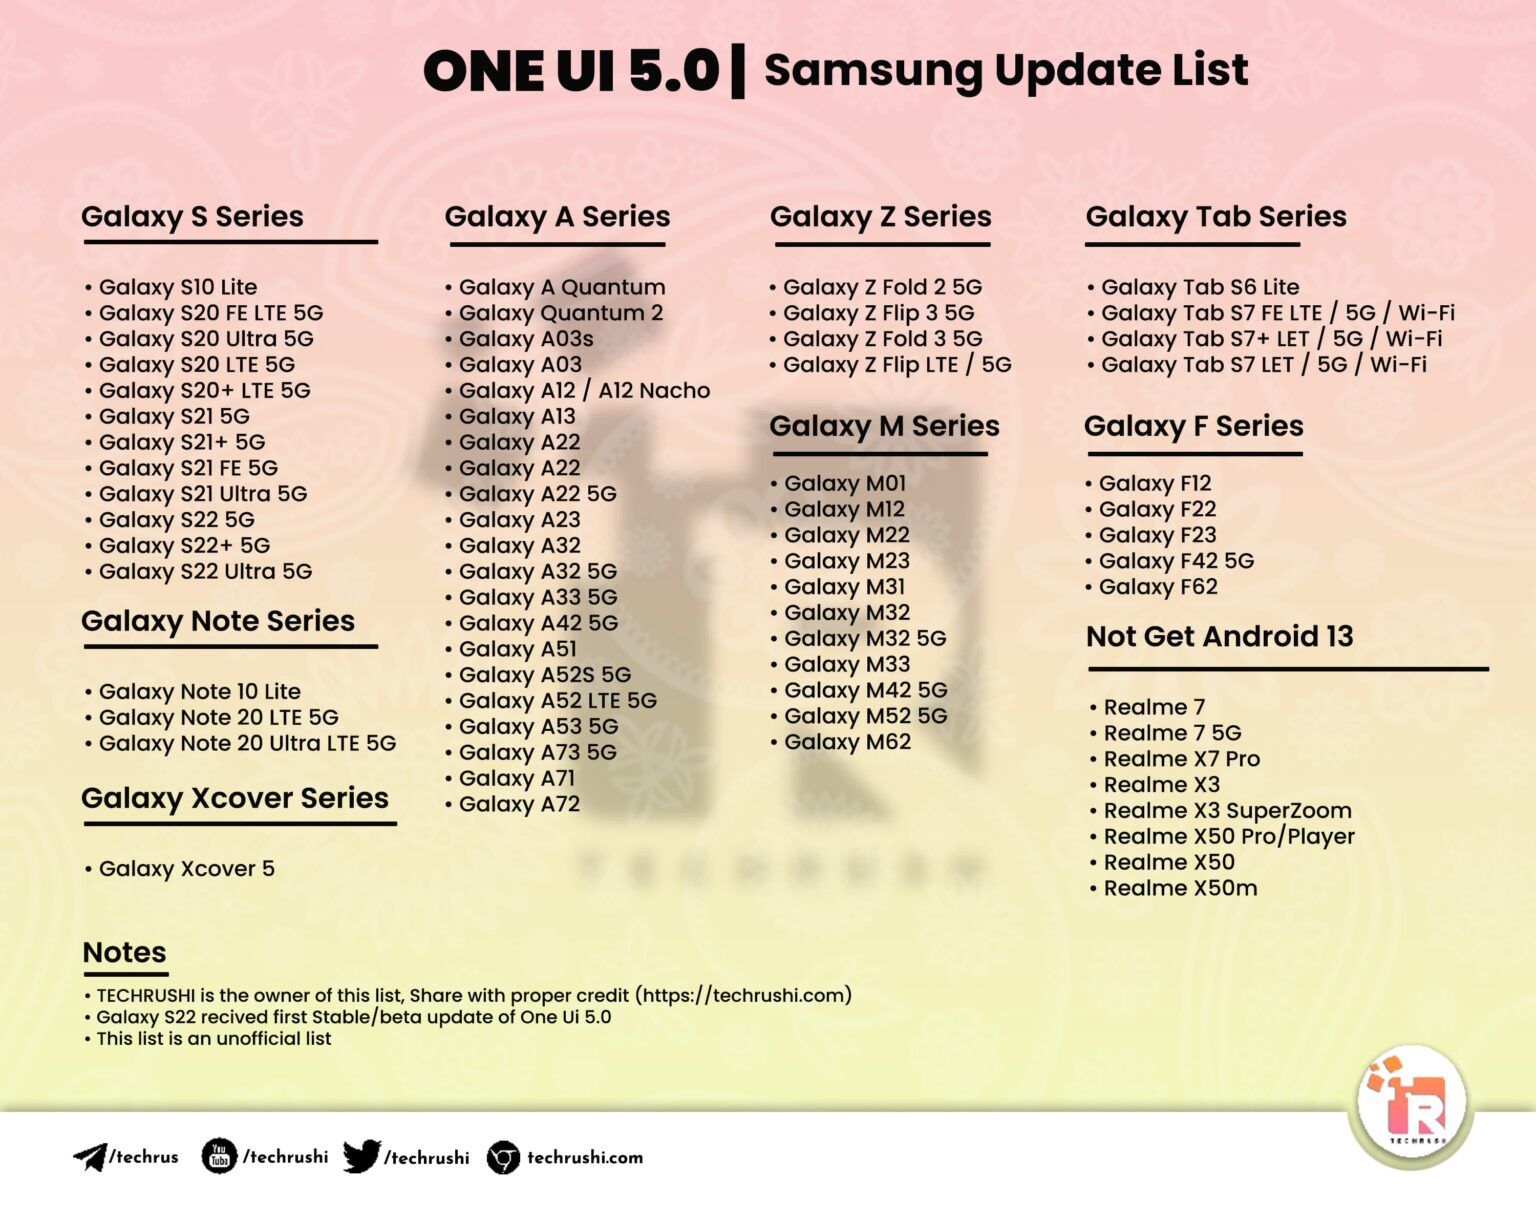 Samsung One UI 5.0 Update List - Samsung Members